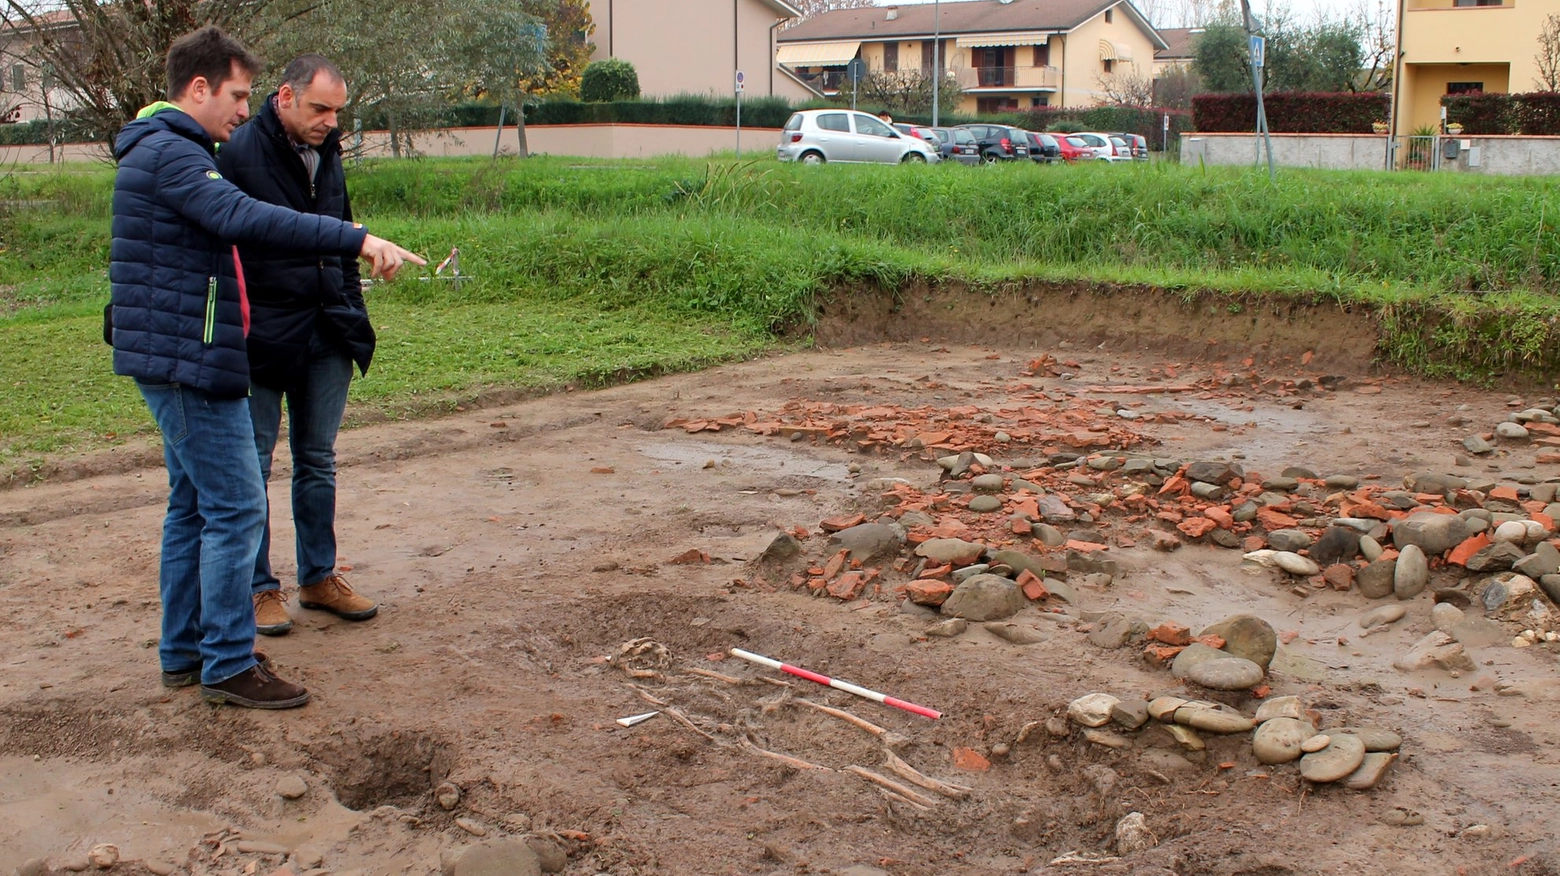  Il direttore degli scavi Giannoni spiega al sindaco Menesini le caratteristiche dello scheletro